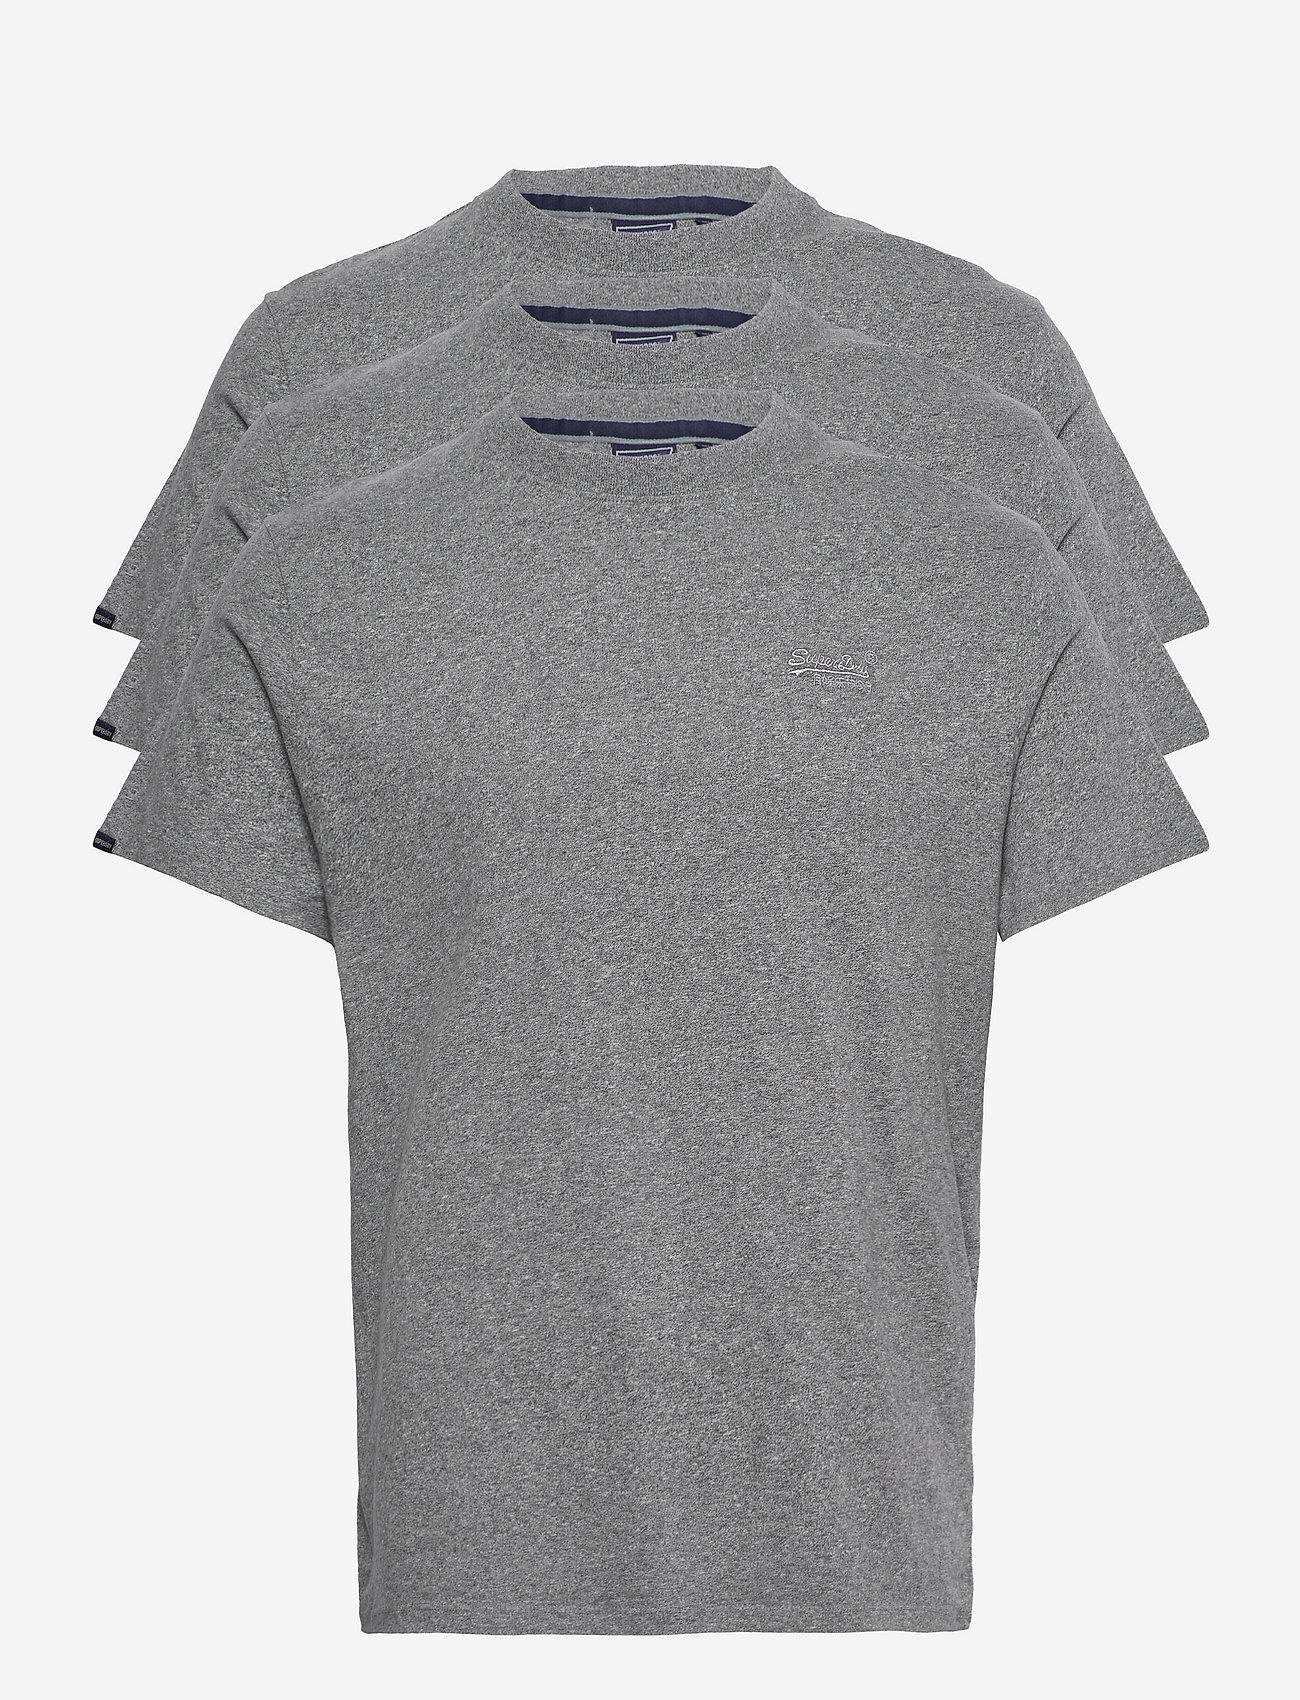 Superdry - ESSENTIAL TRIPLE PACK T-SHIRT - laisvalaikio marškinėliai - noos grey marl - 0